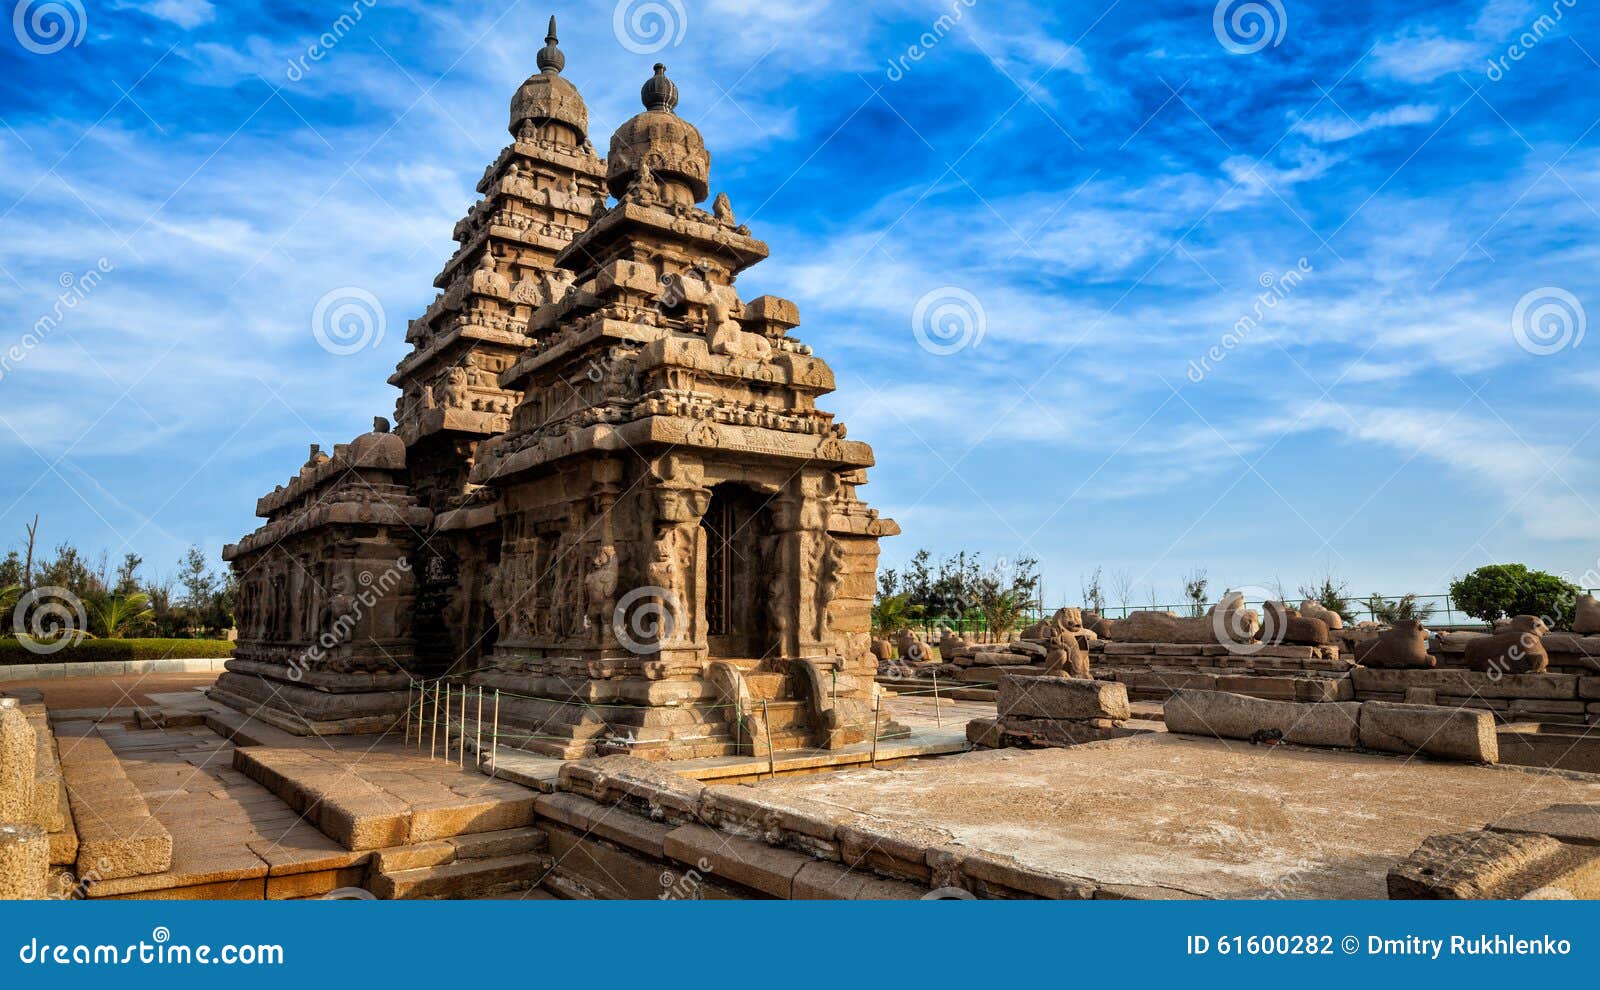 shore temple in mahabalipuram, tamil nadu, india